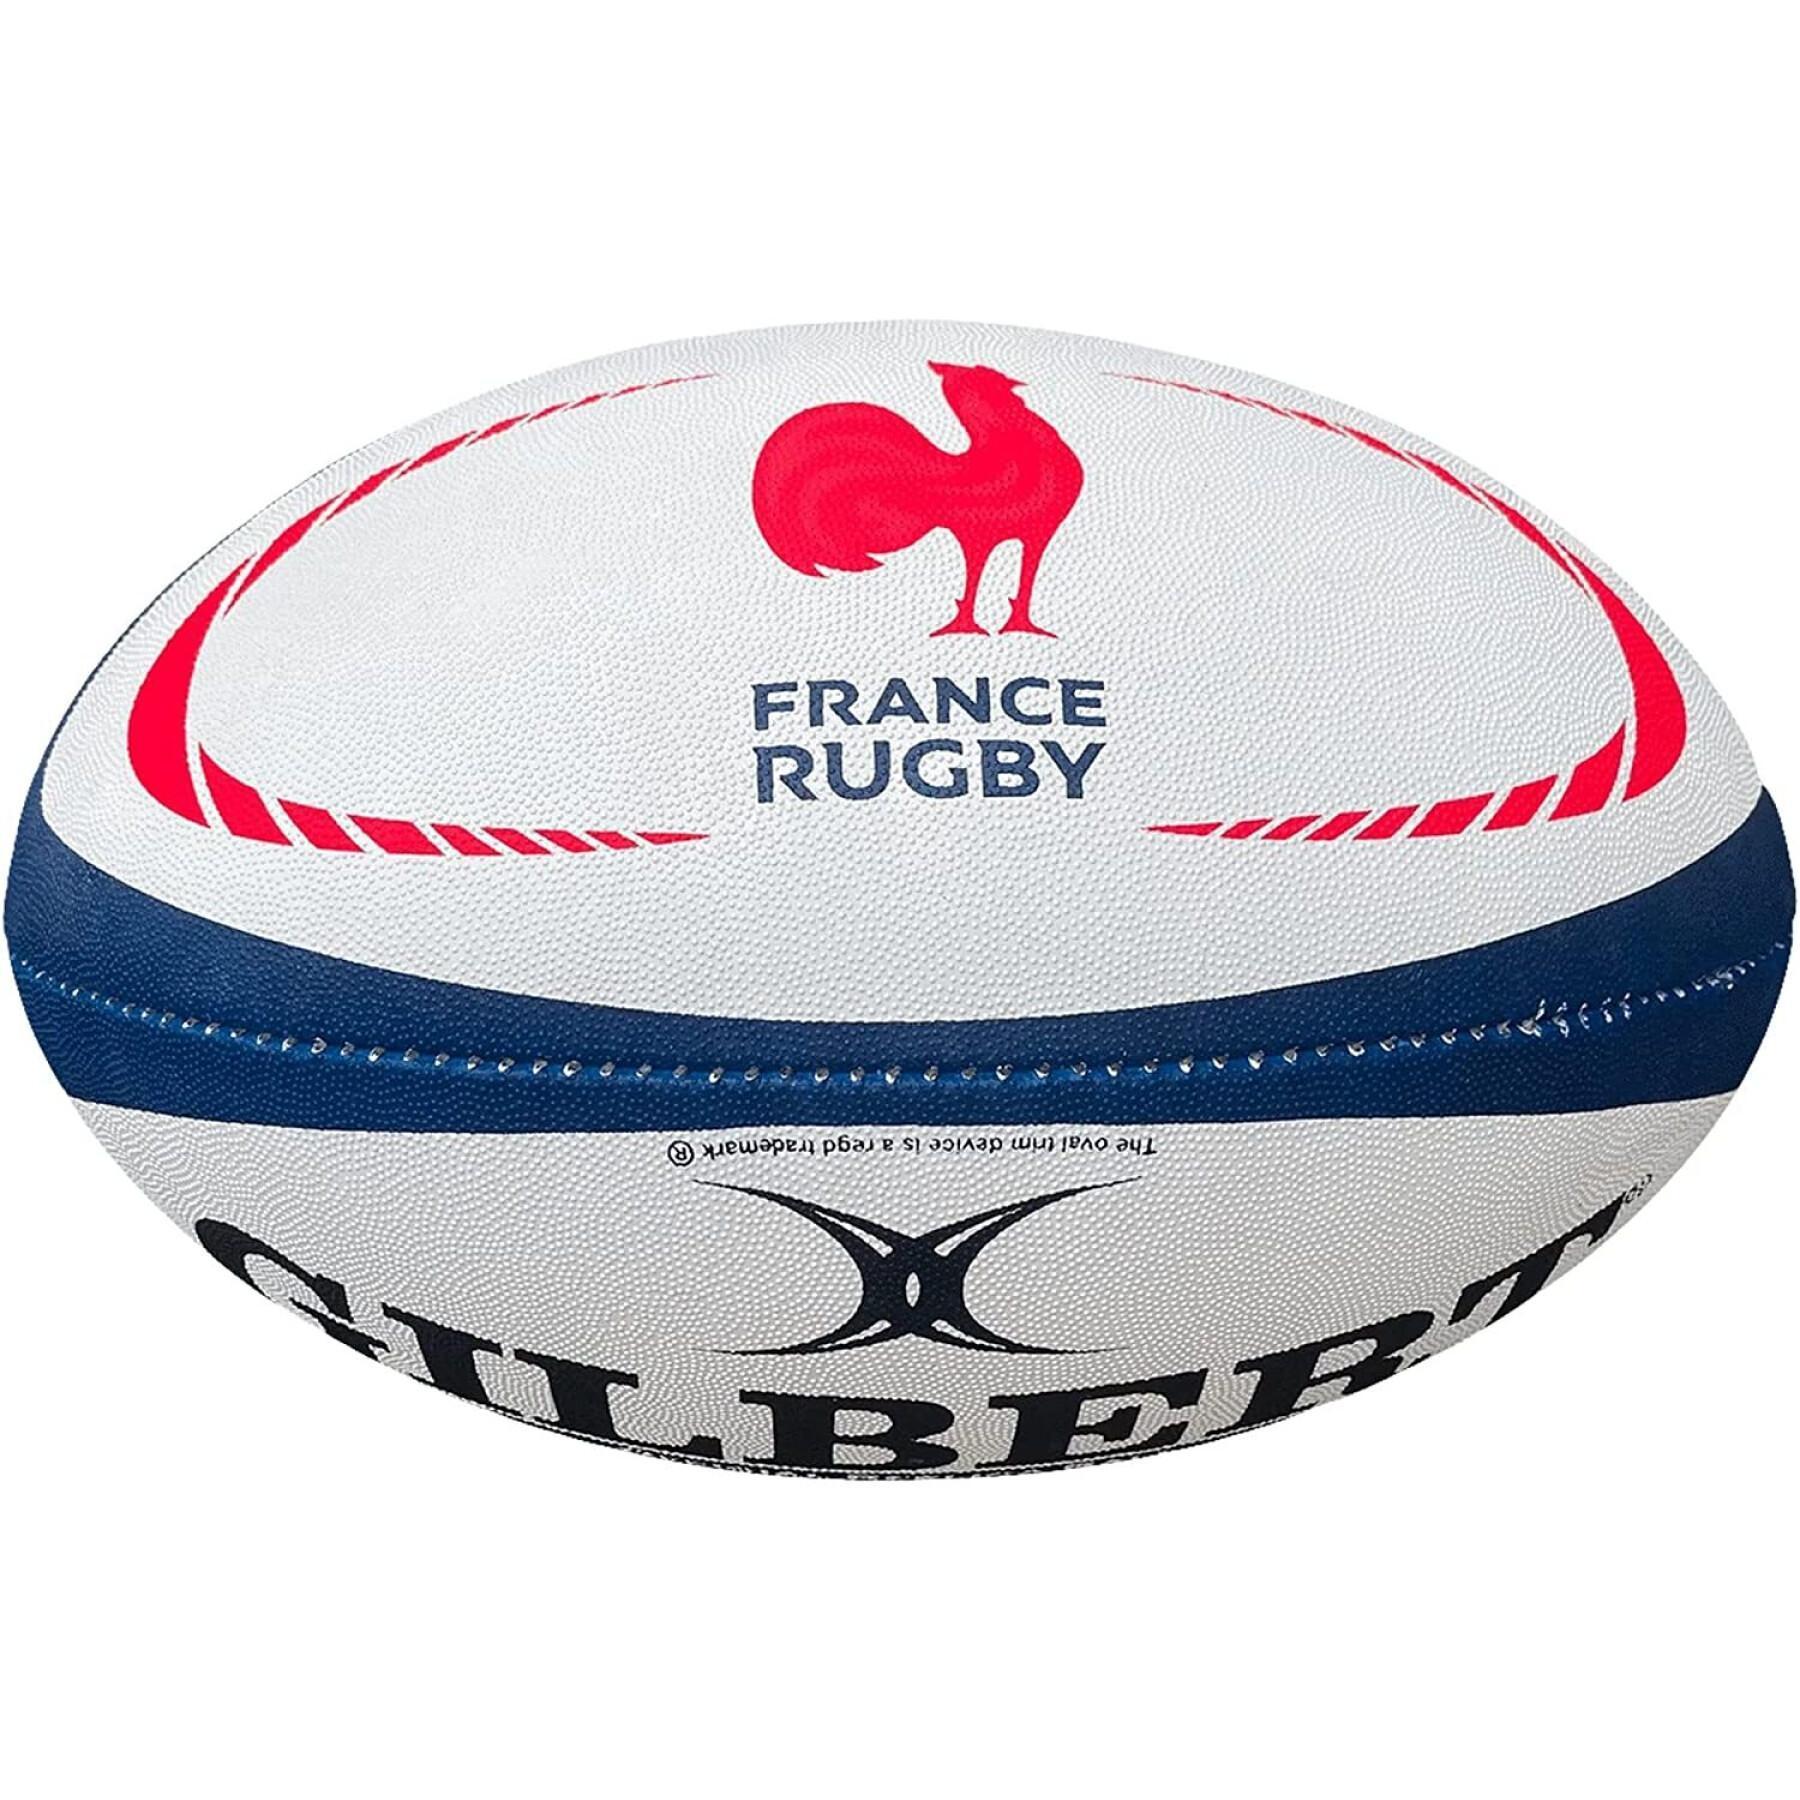 Set of 5 Rugby balls France